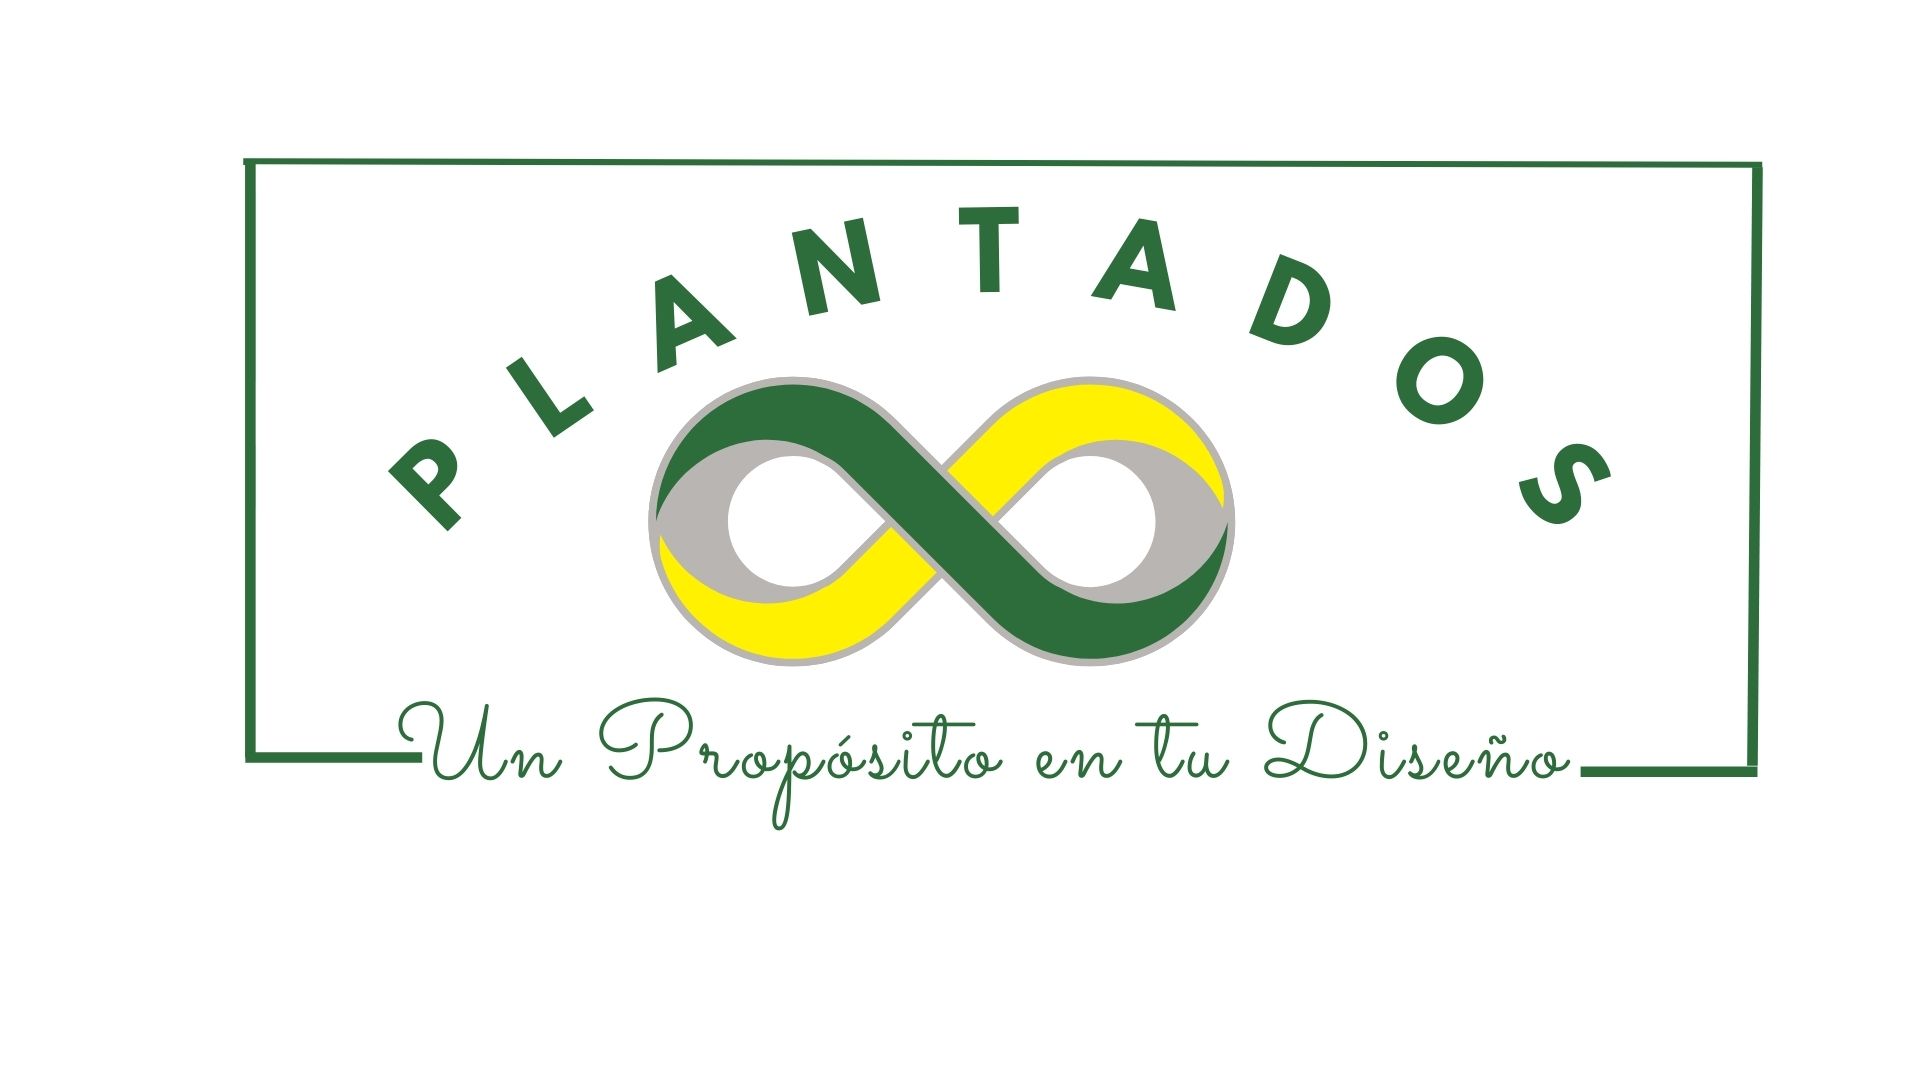 PlantaDos